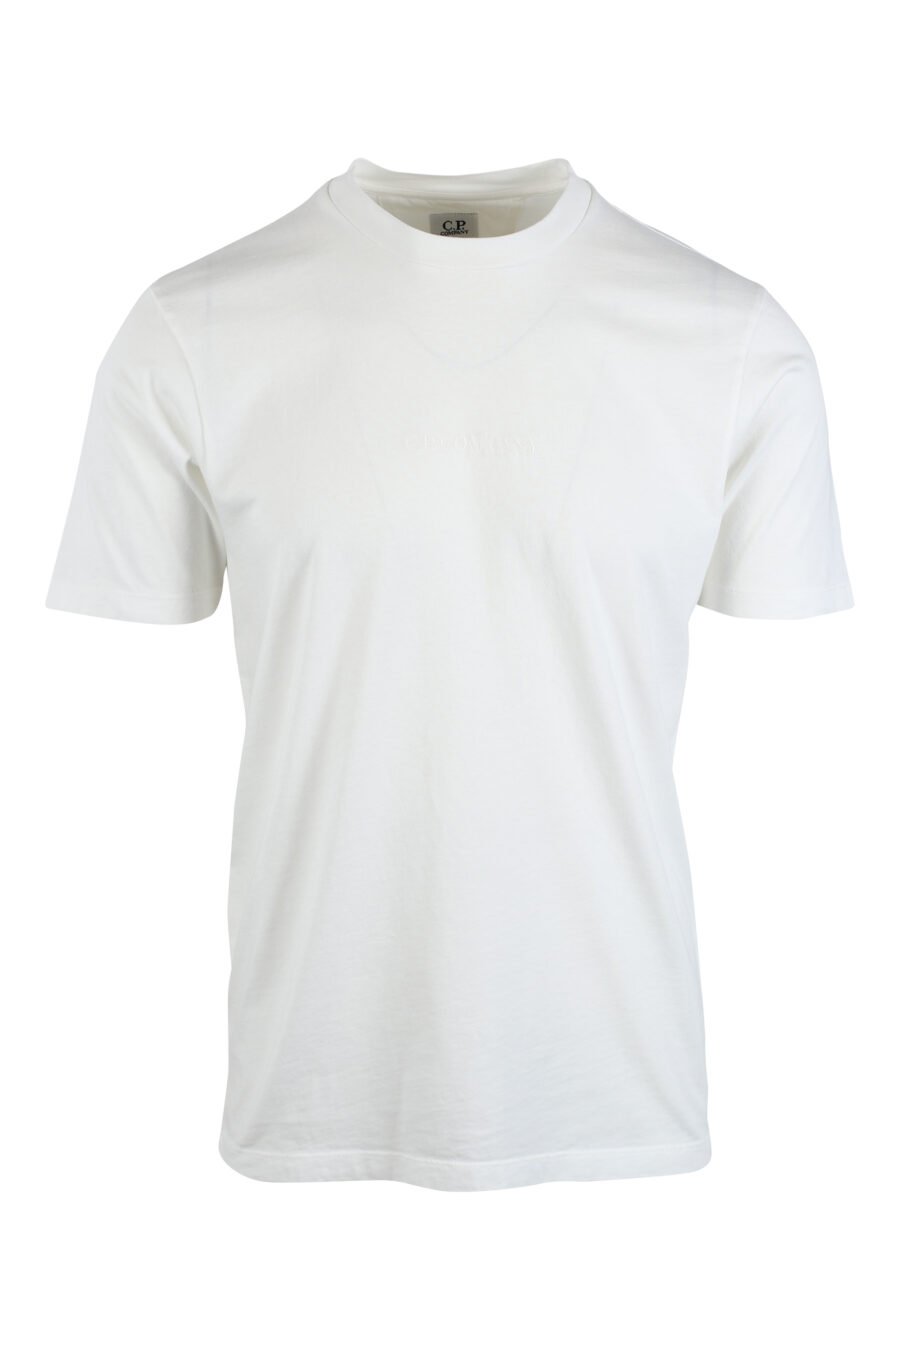 T-shirt blanc avec mini logo brodé au centre et imprimé graphique au dos - IMG 2621